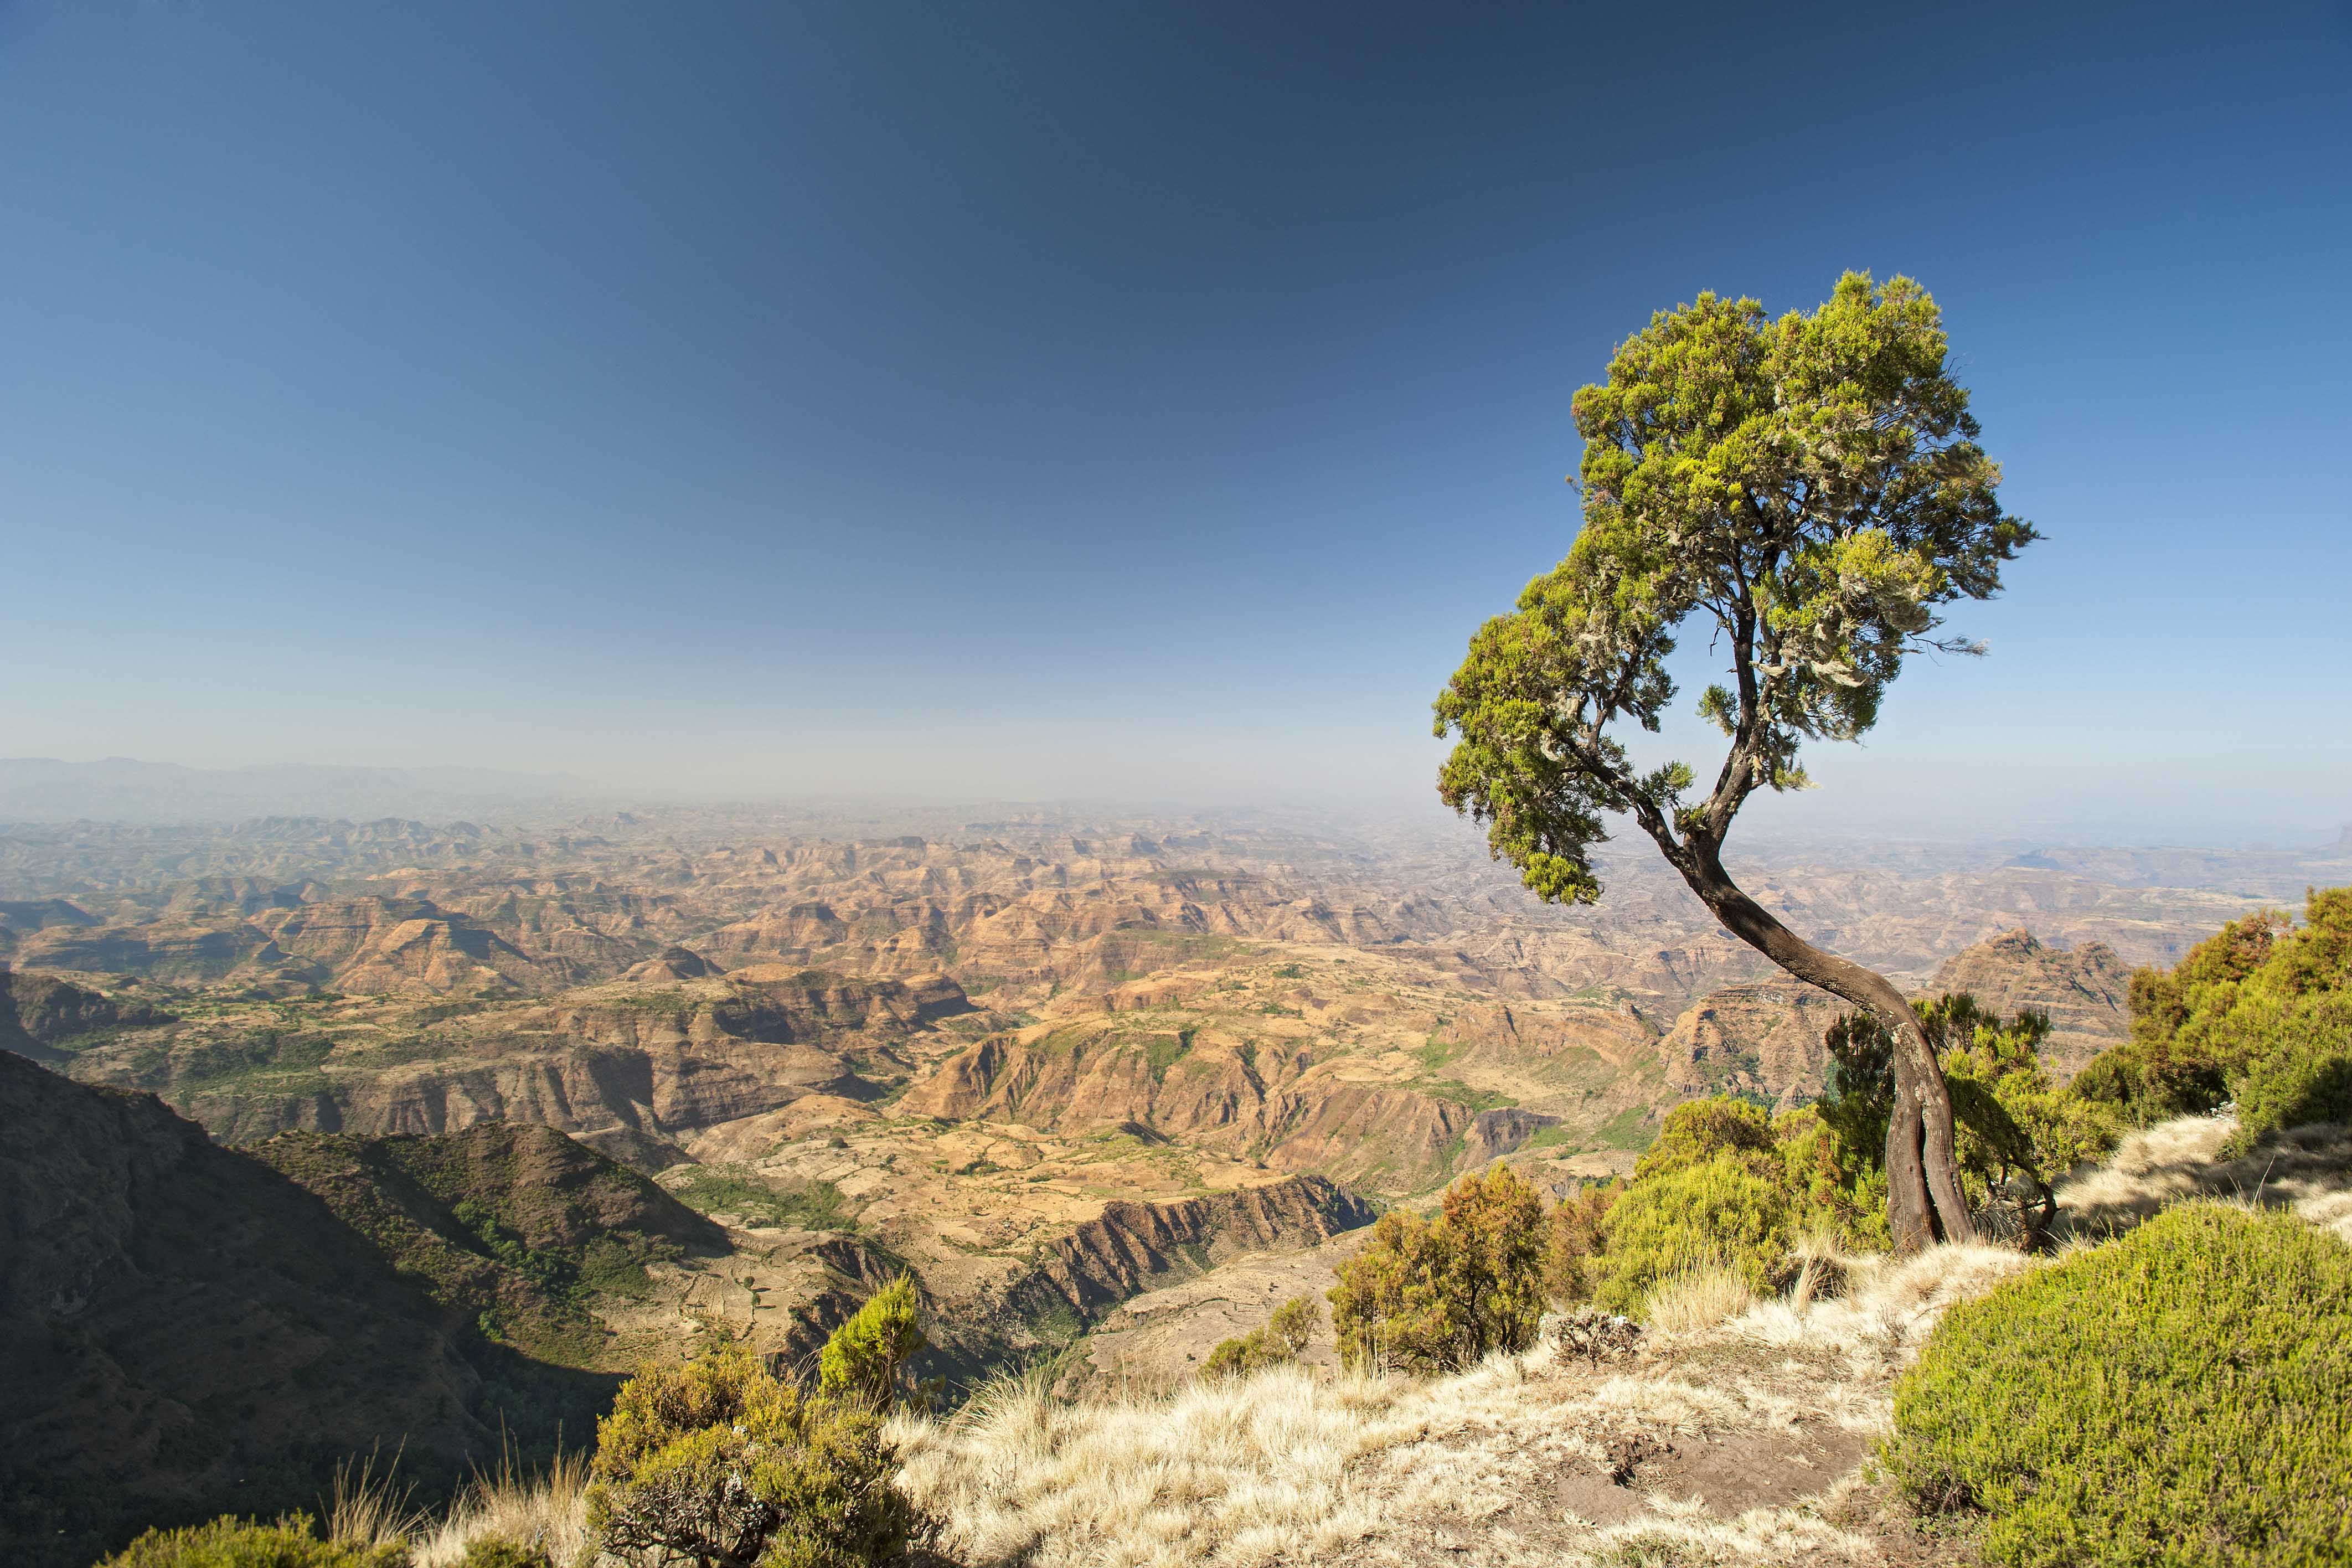 Ethiopian mountain view